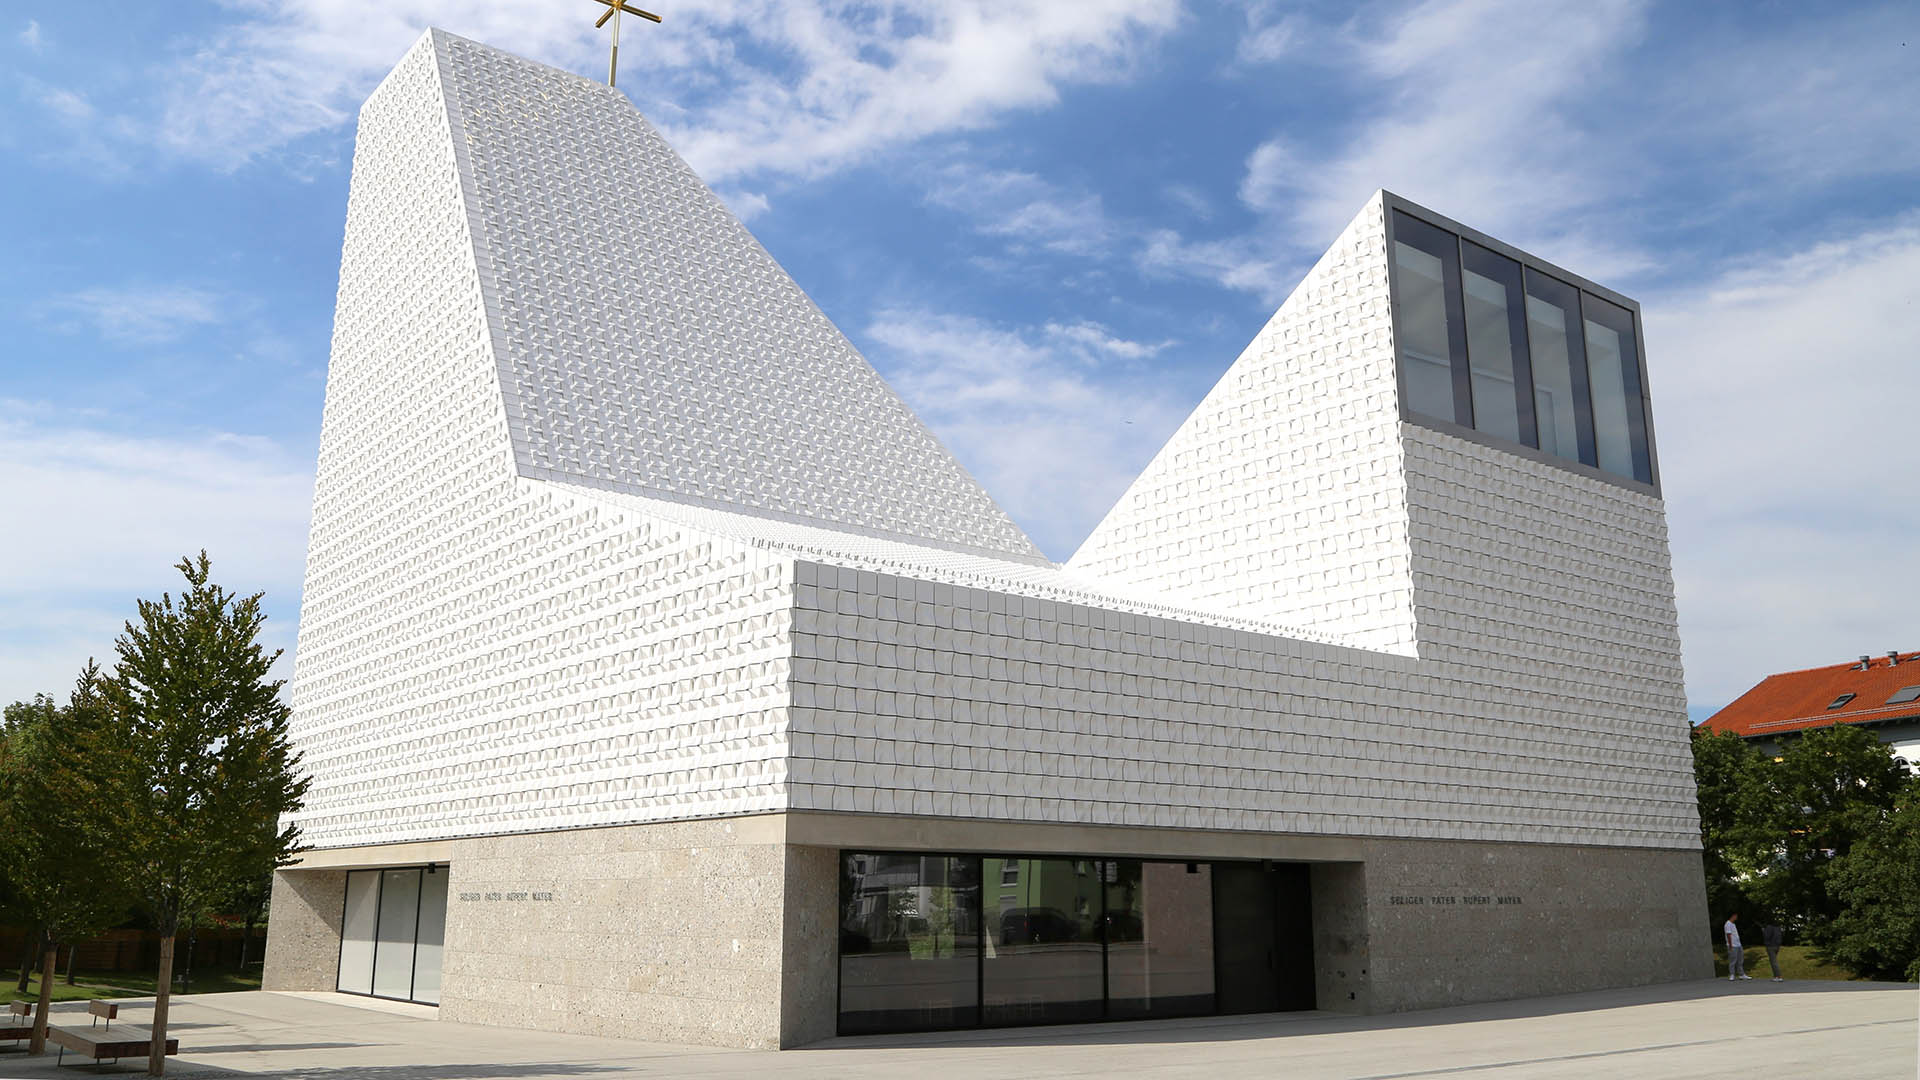 Im bayerischen Poing steht die Kirche Seliger Pater Rupert Mayer. Sie erhielt in diesem Jahr einen der renommiertesten internationalen Architekturpreis.